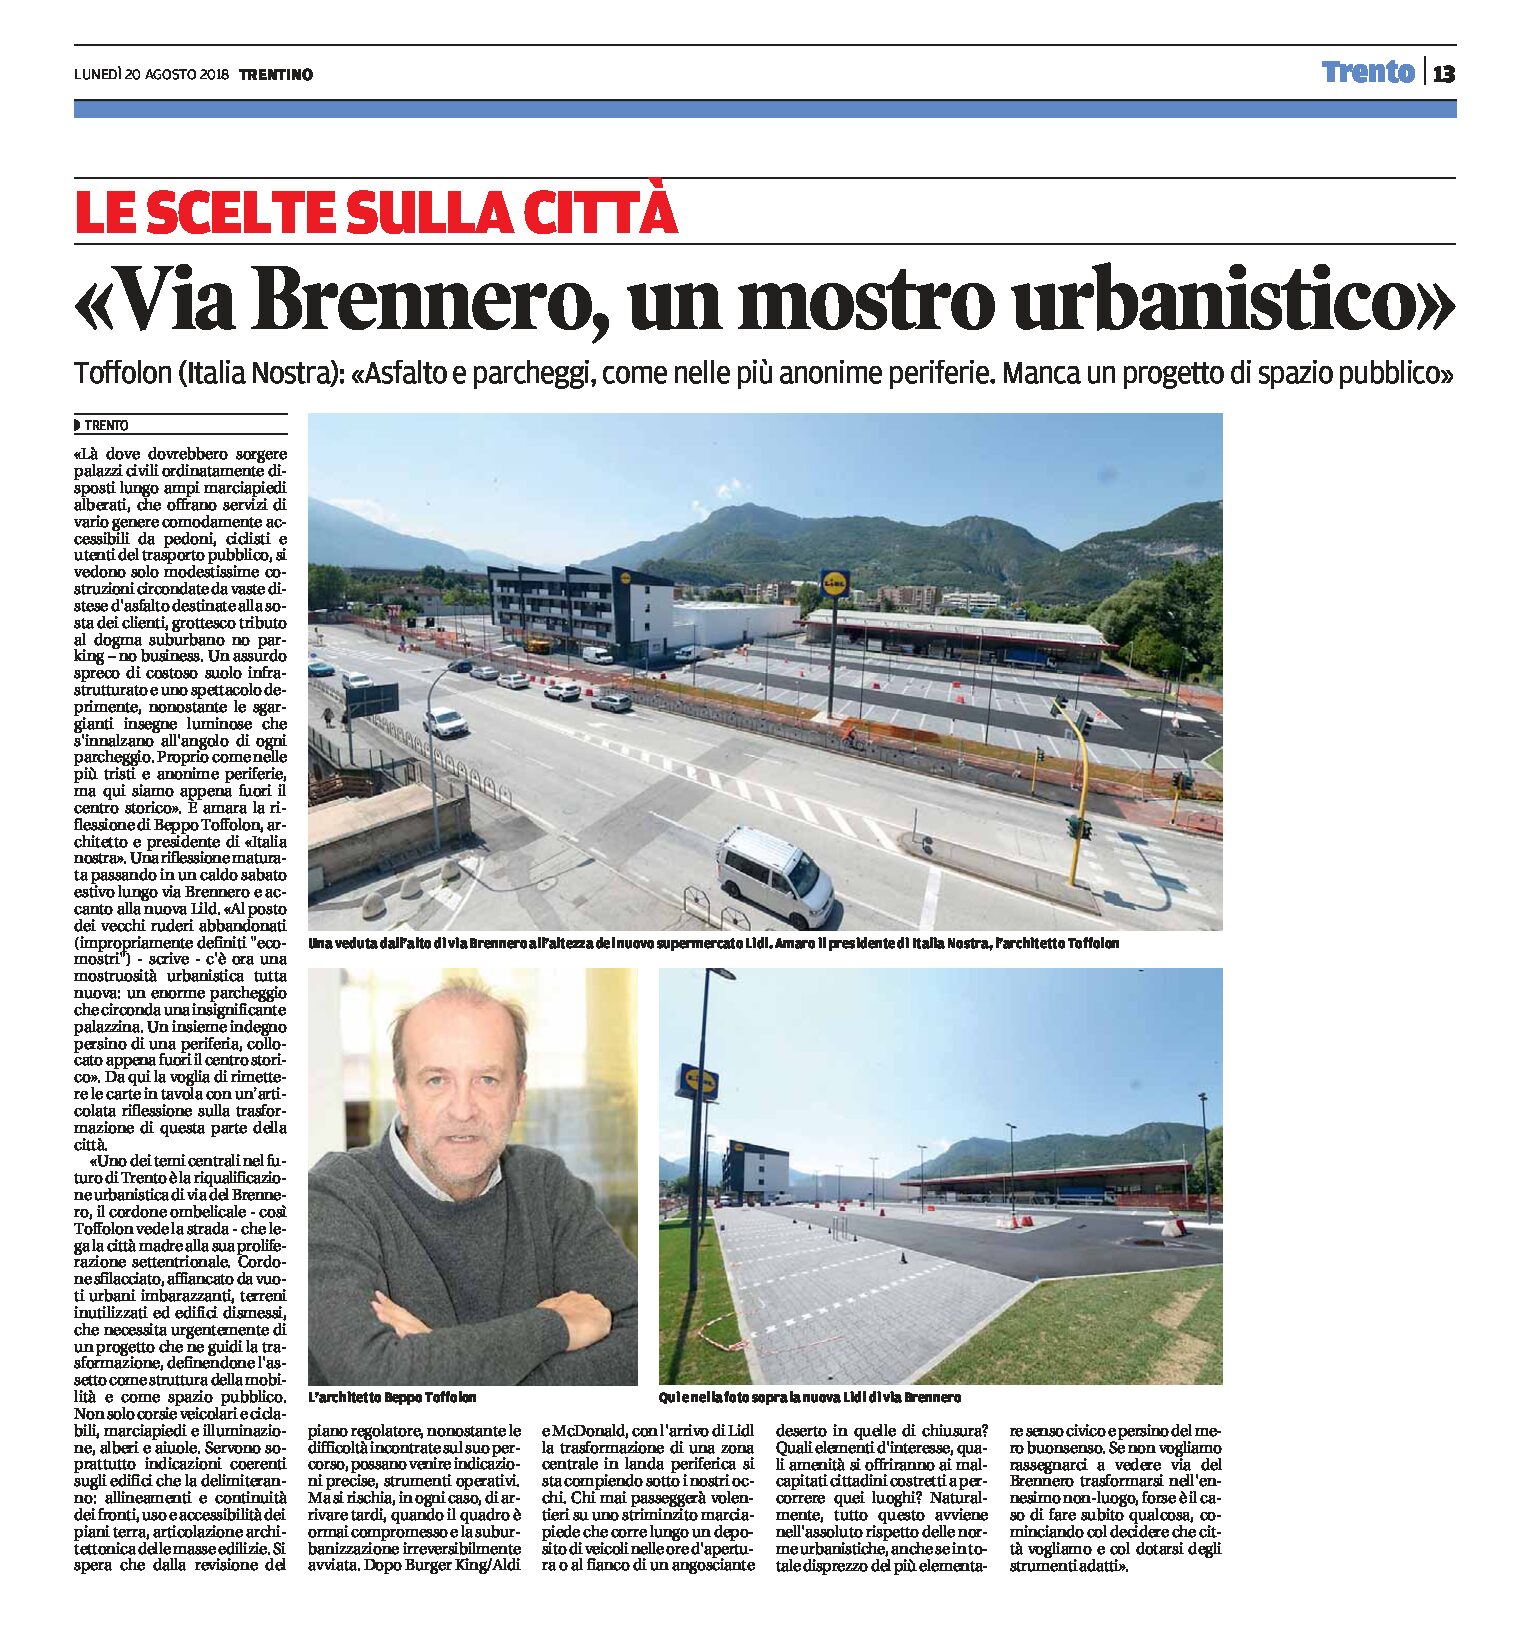 Trento, via Brennero: Italia Nostra “asfalto e parcheggi come nelle più anonime periferie”